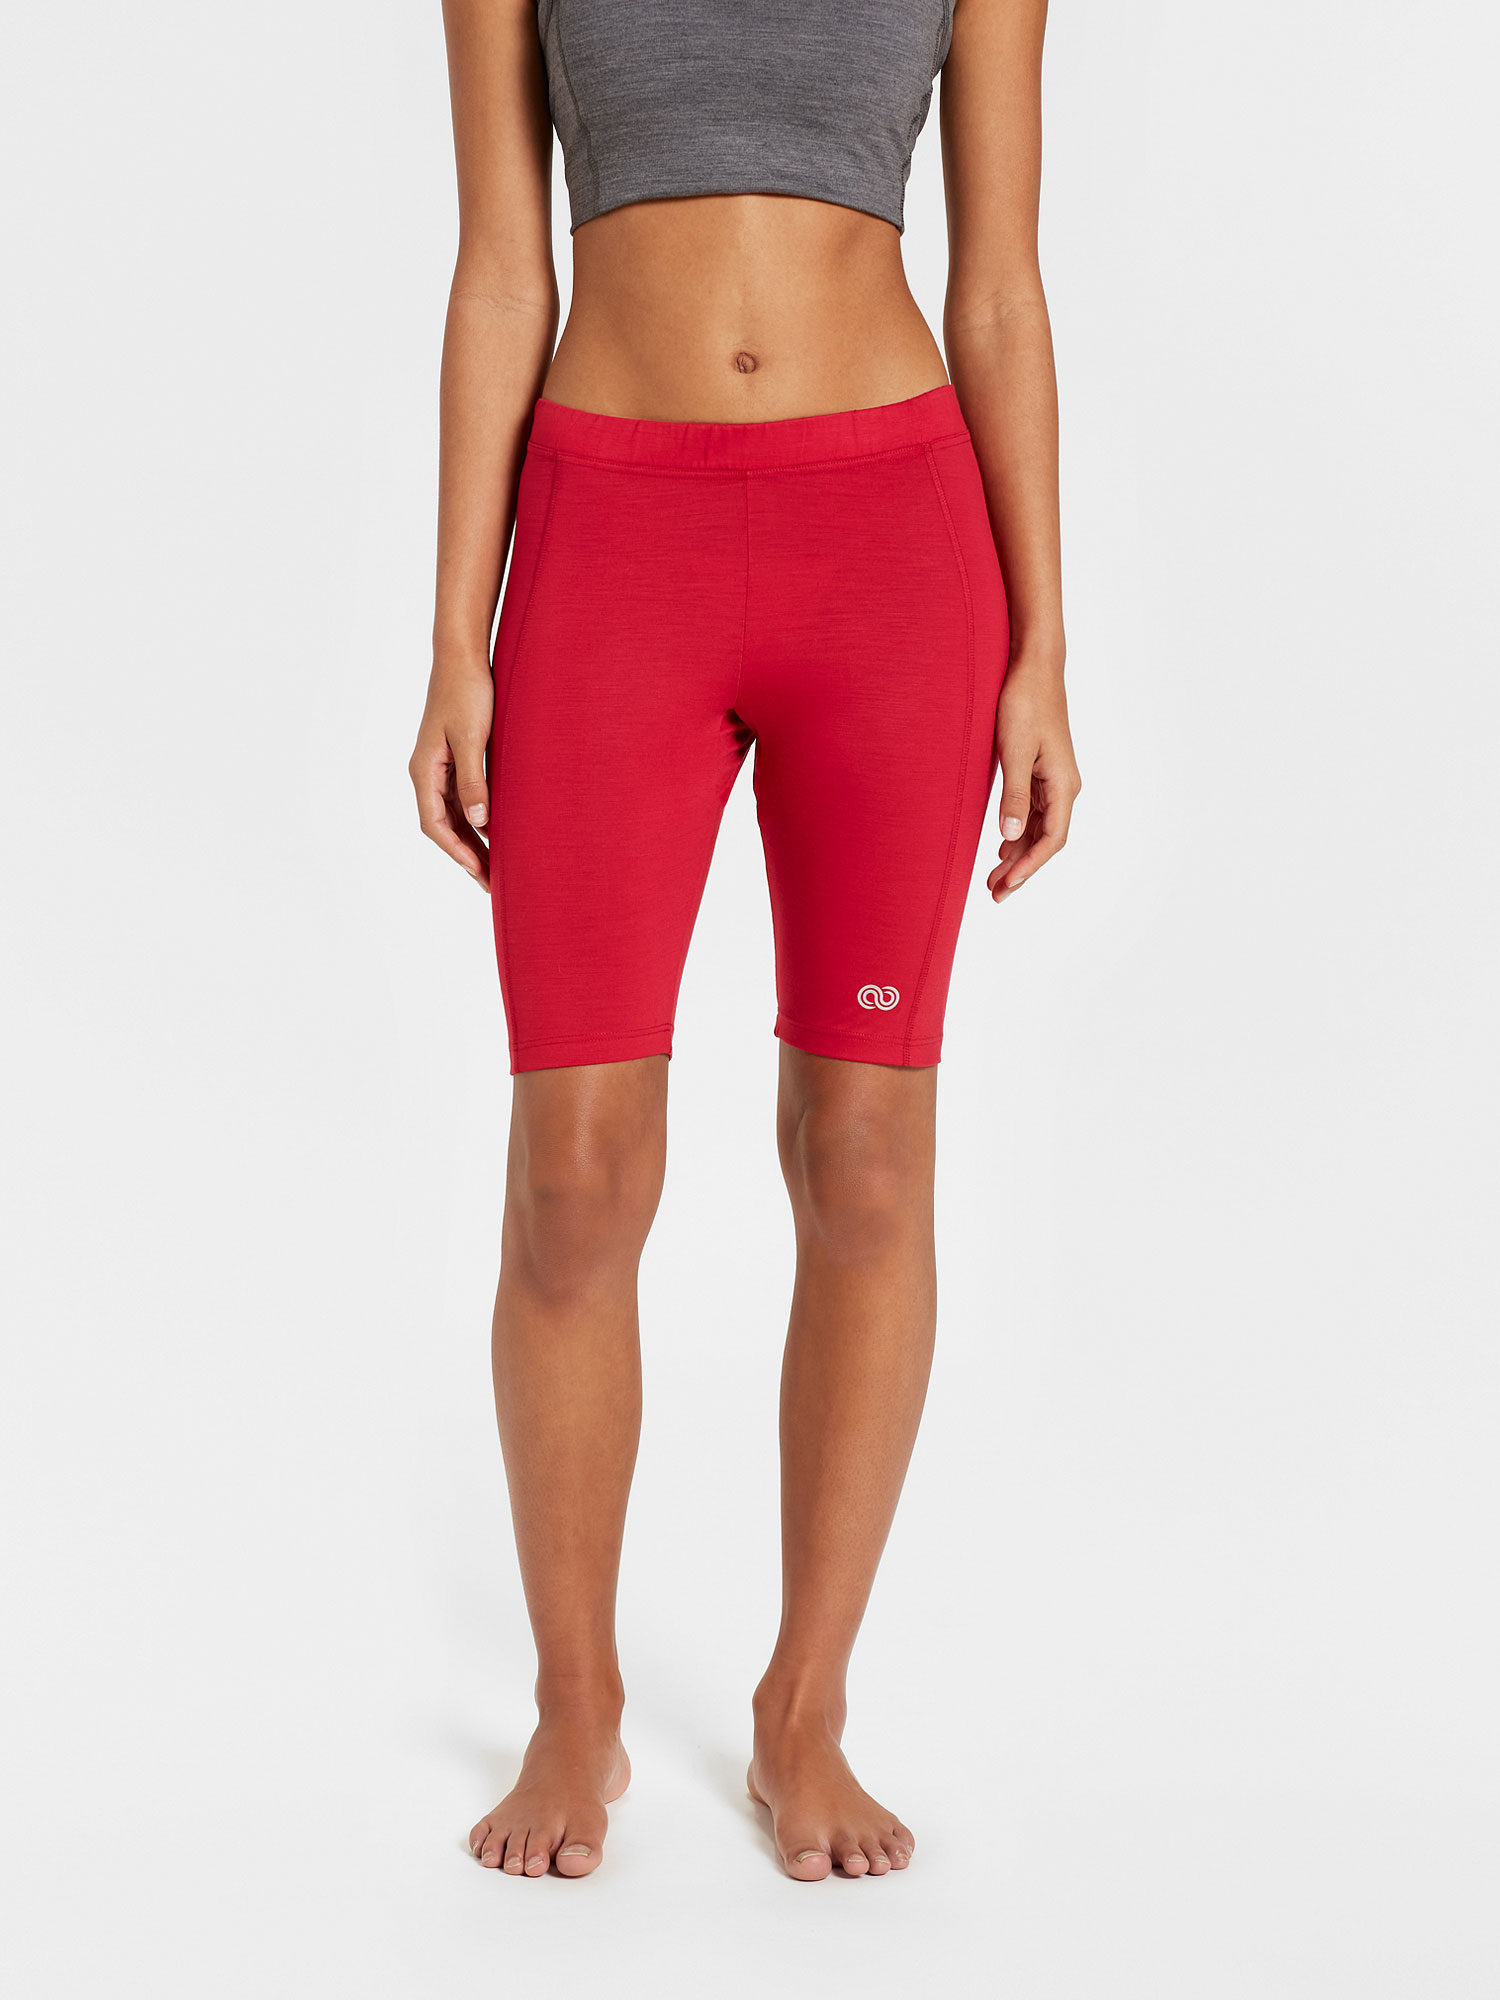 KANDAR - red merino jersey 190 gr short leggings for woman, Rewoolution